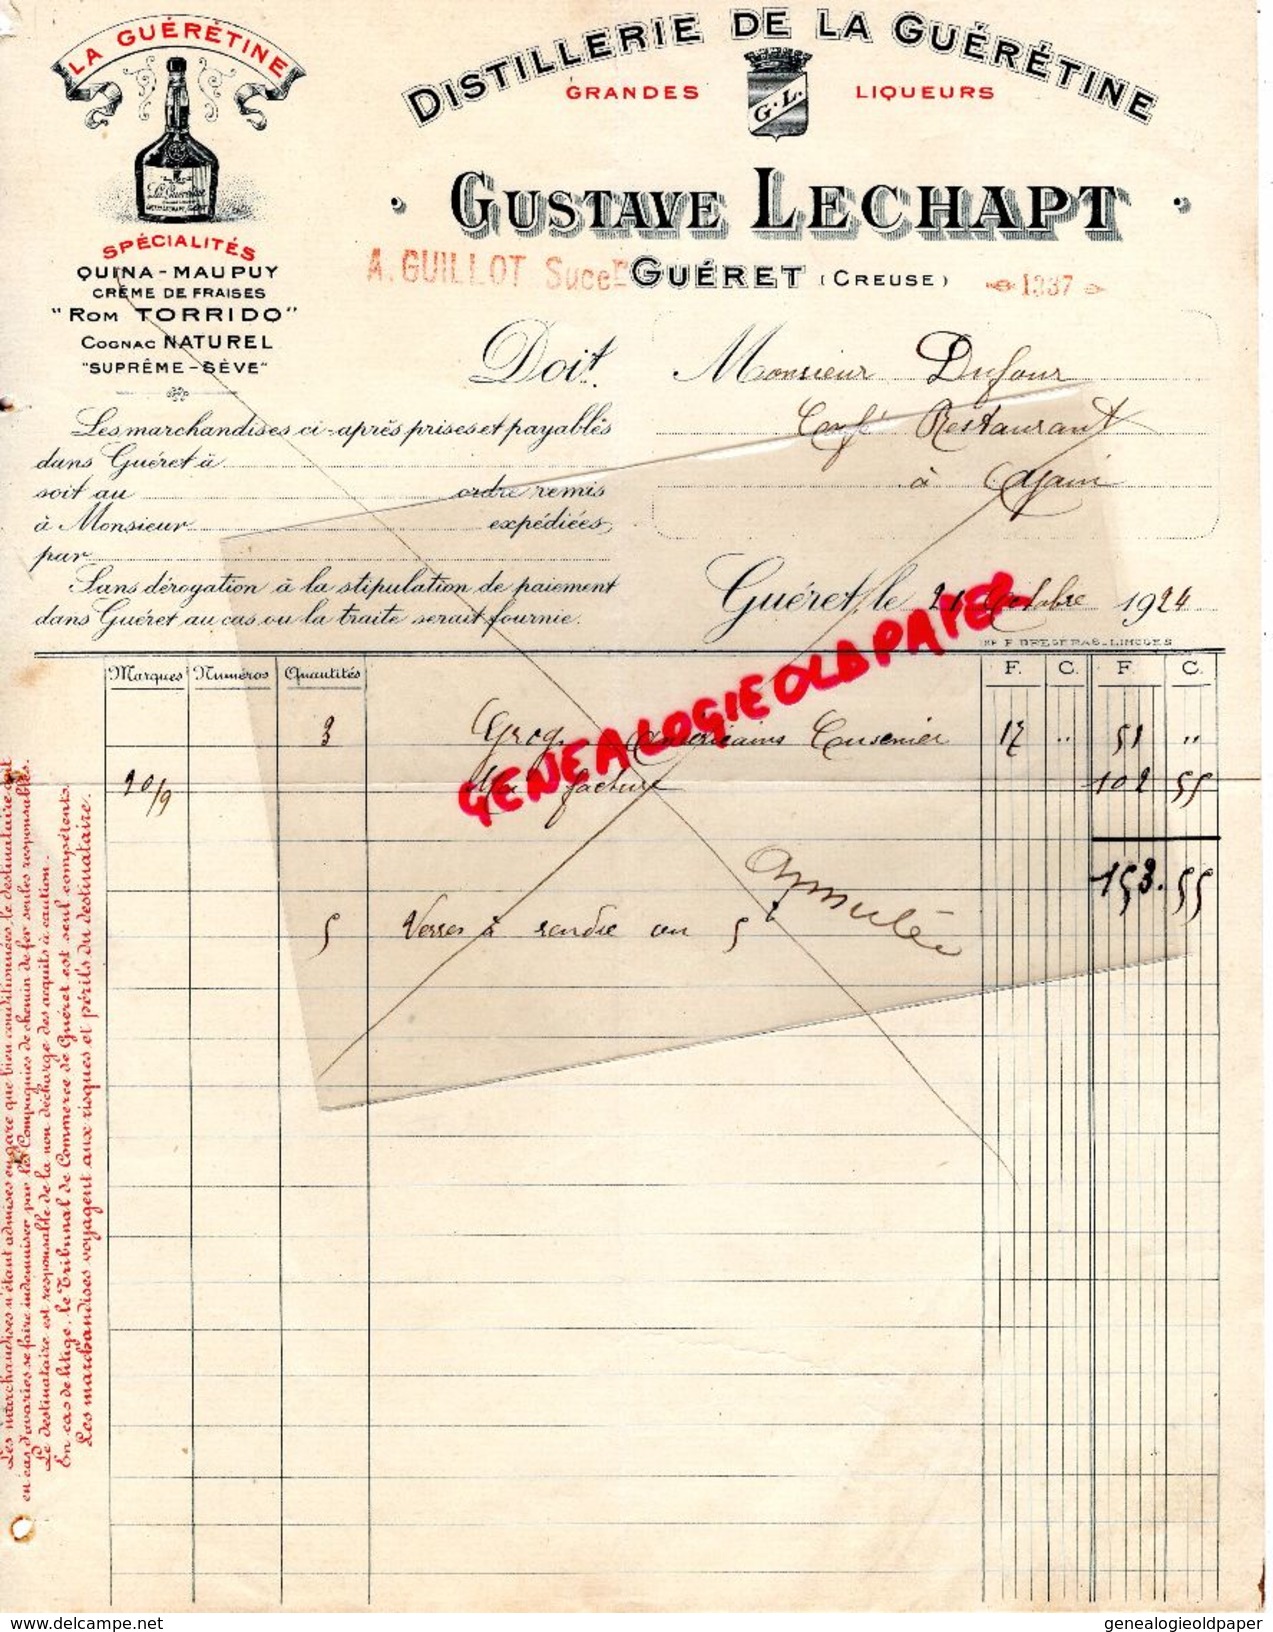 23 - GUERET - FACTURE GUSTAVE LECHAPT -DISTILLERIE DE LA GUERETINE-ROM TORIDO-QUINA MAUPUY- A. GUILLOT SUCCESSEUR- 1924 - Old Professions